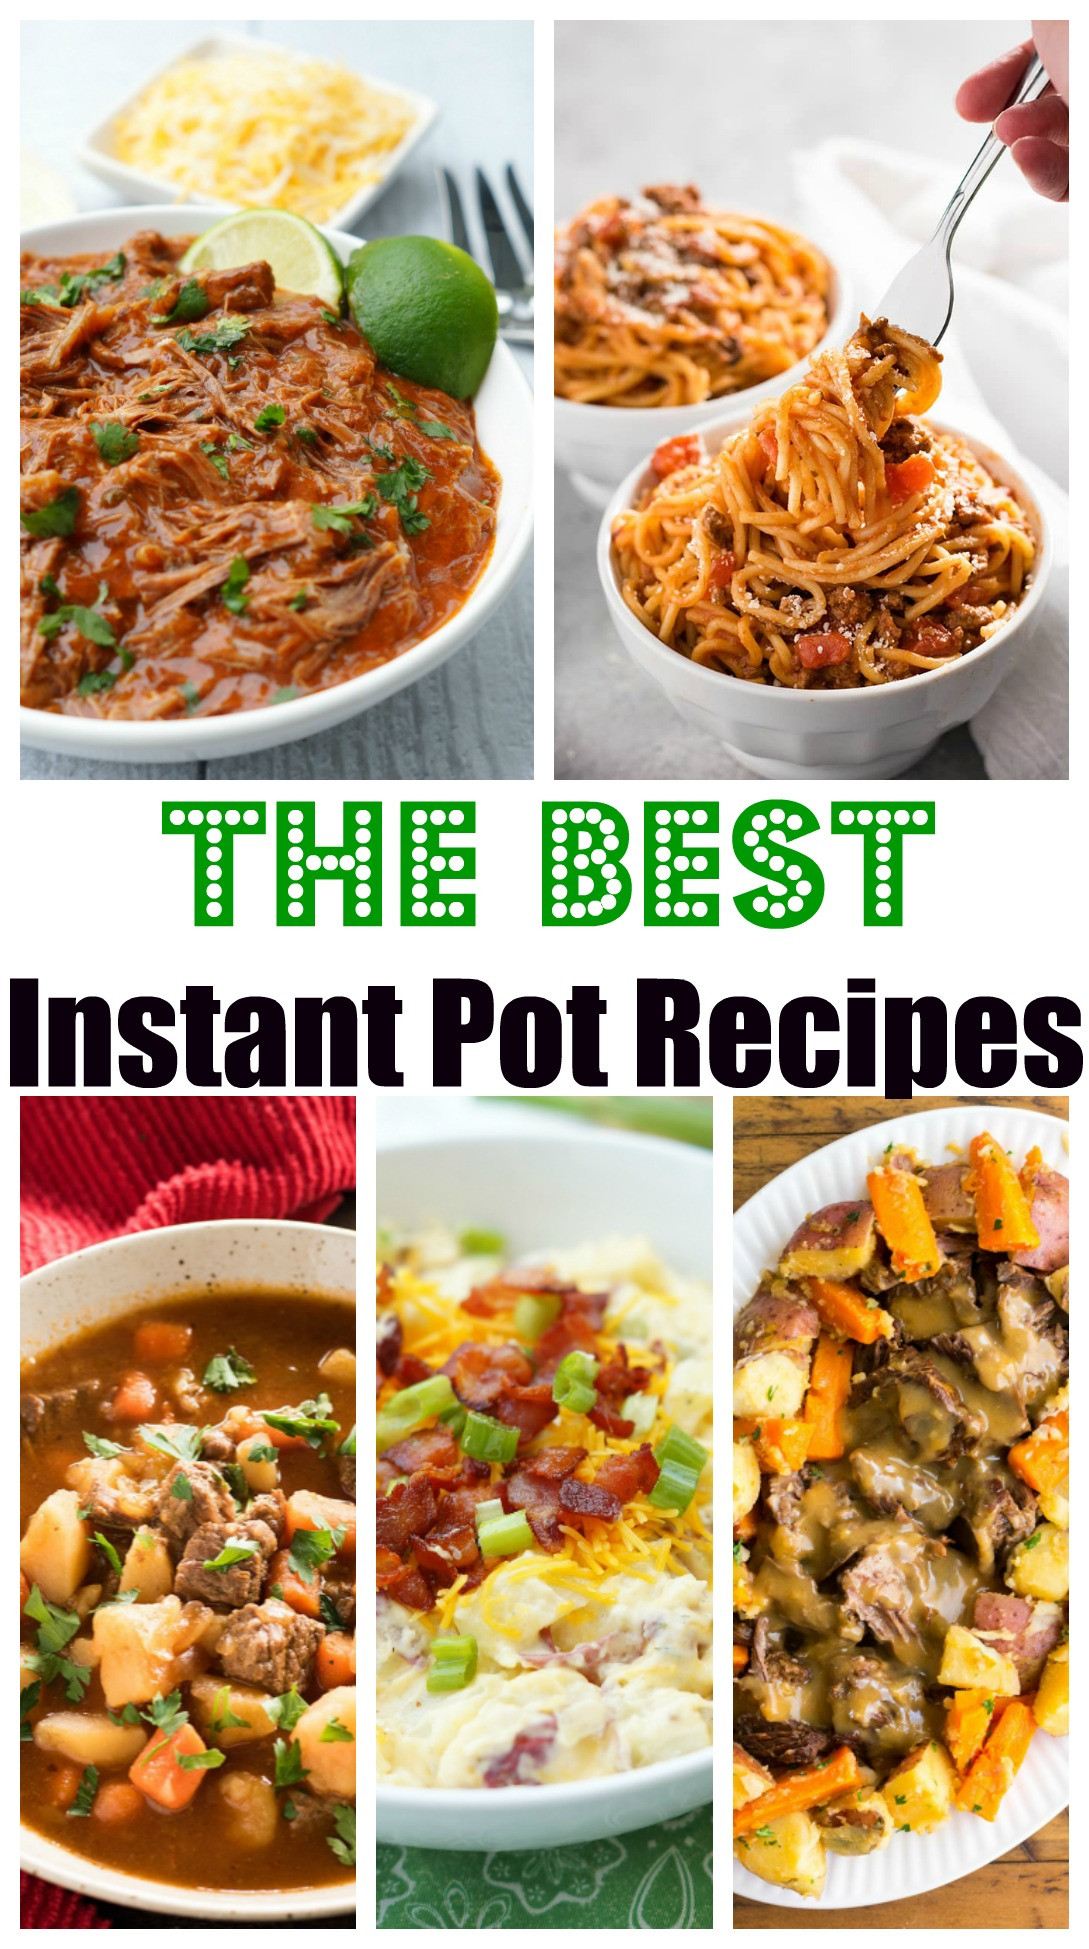 Favorite Instant Pot Recipes
 The Best Instant Pot Recipes